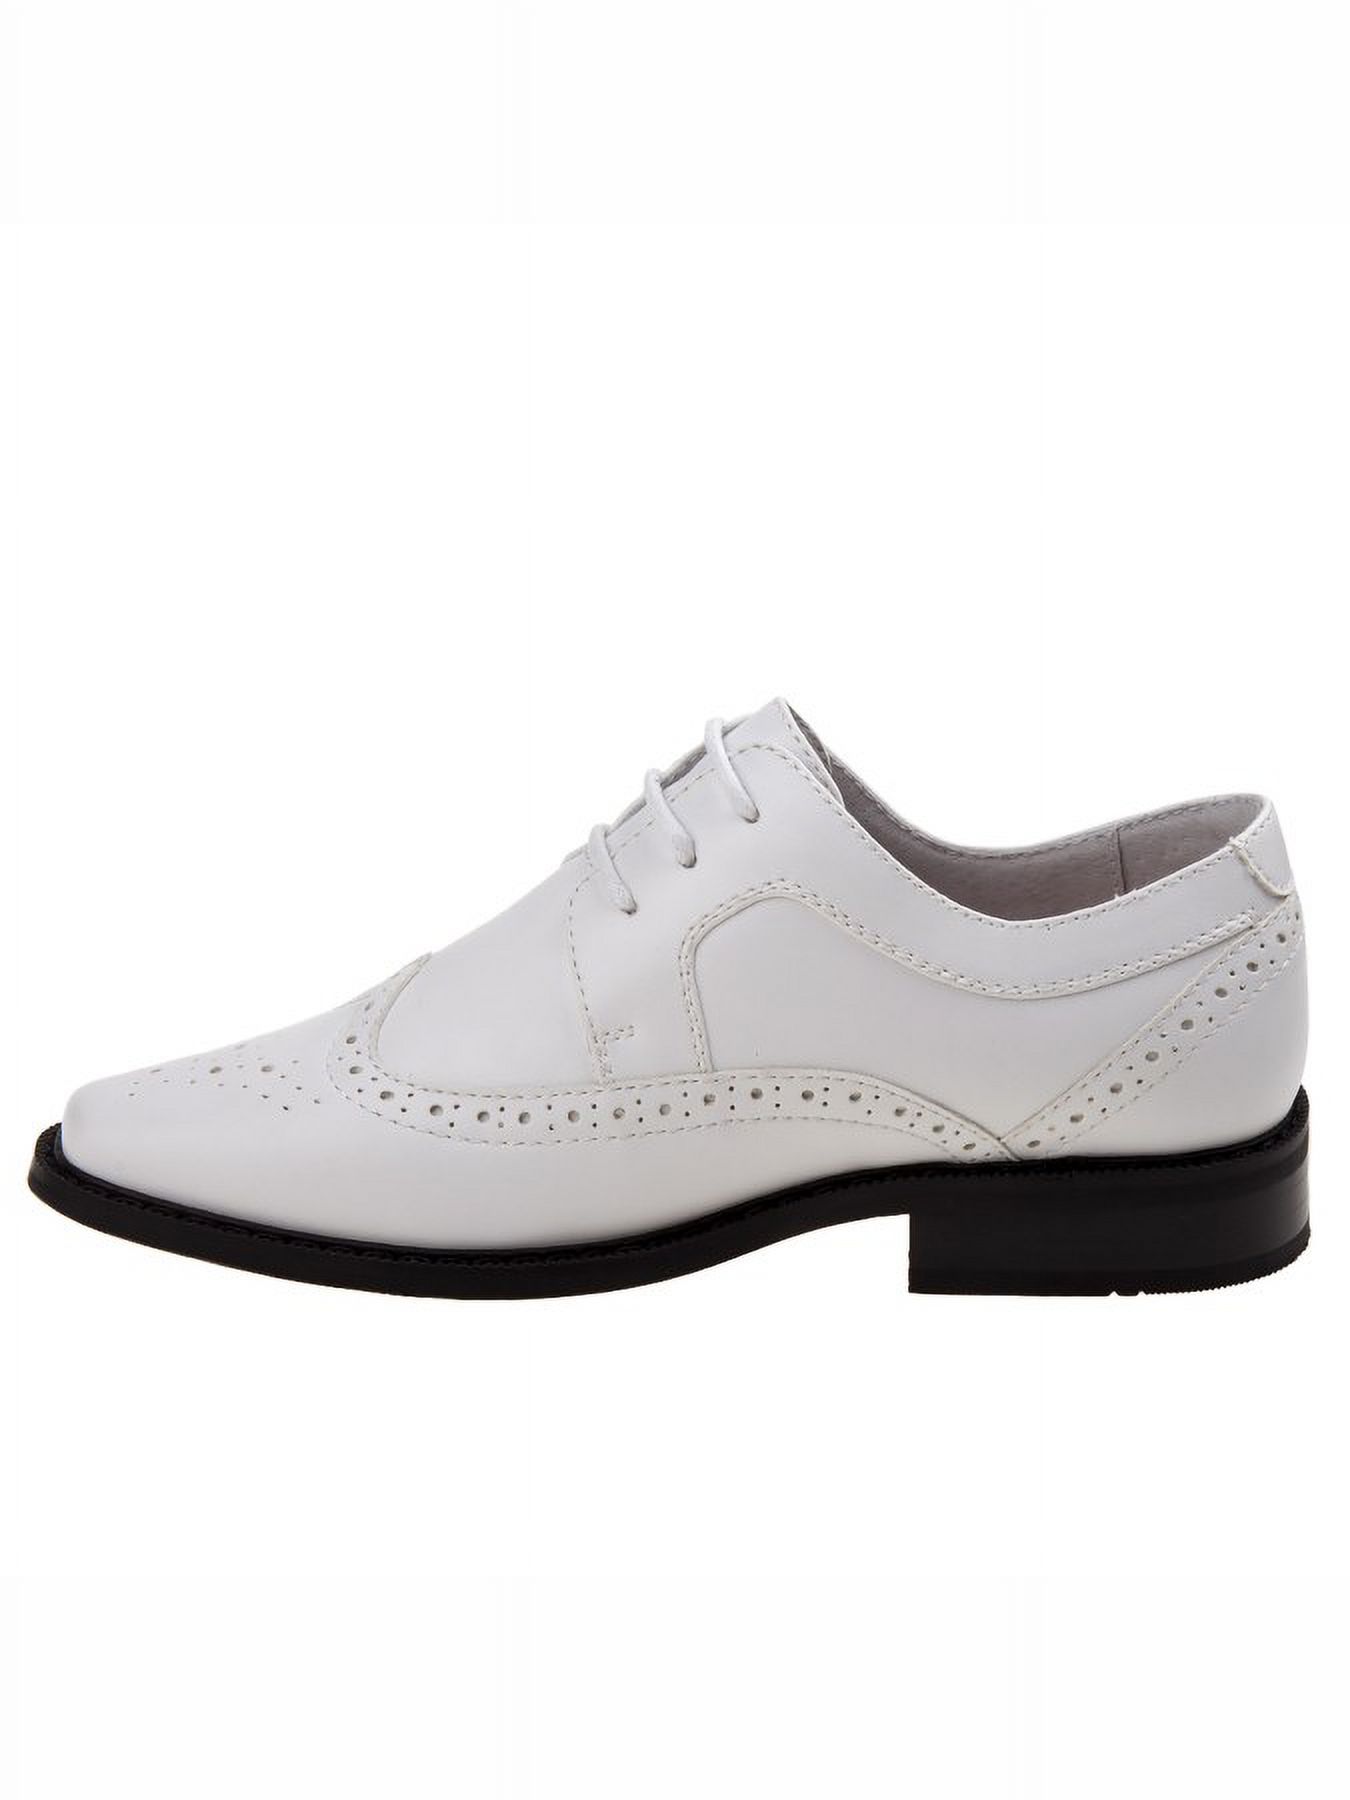 Joseph Allen Boys Lace Child Dress Shoes - White, 4 - image 3 of 5